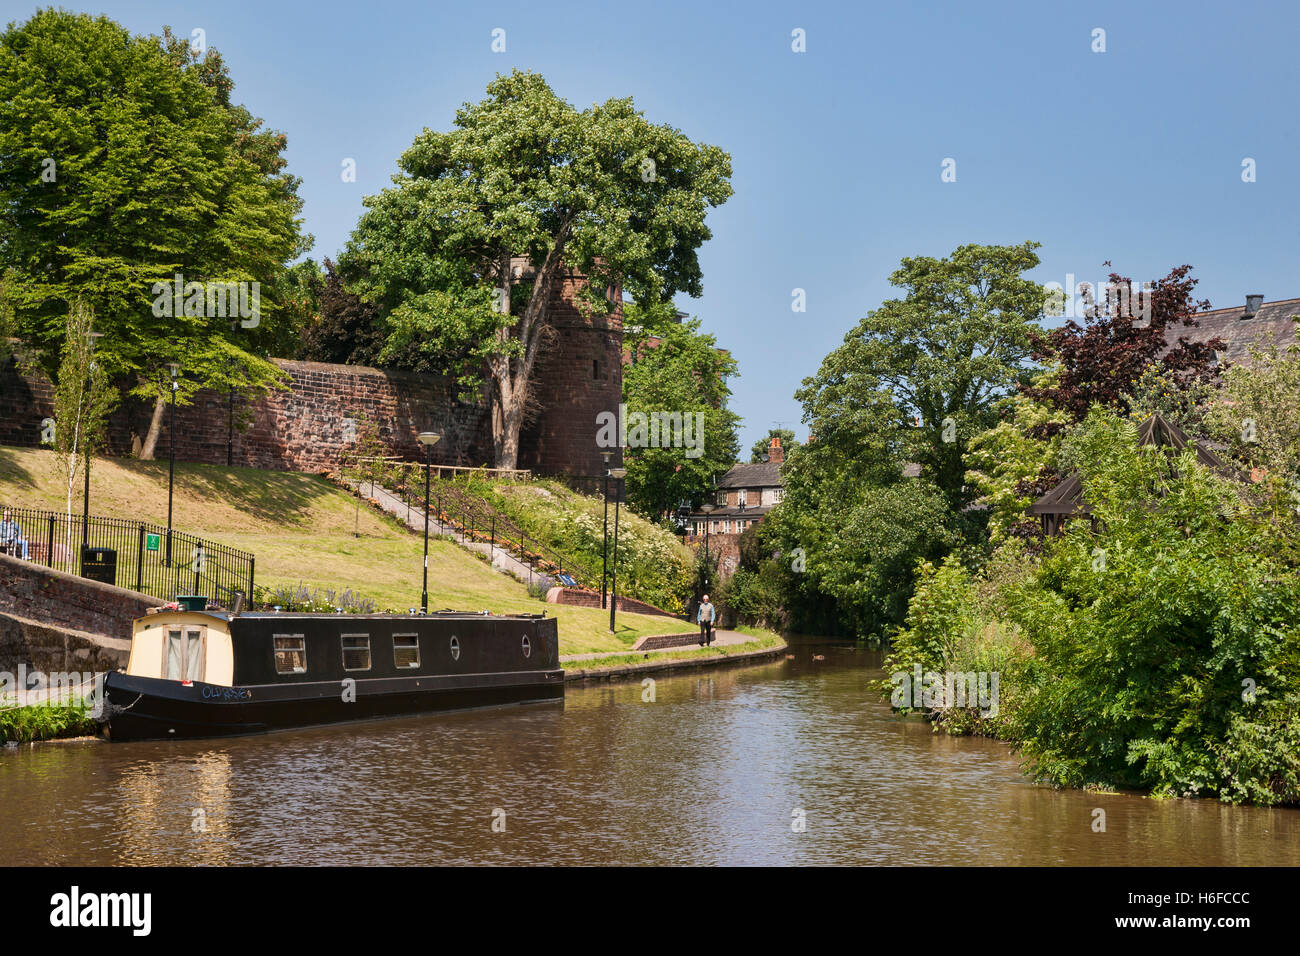 Centro citta' di Chester, canal, Cheshire, Regno Unito Foto Stock